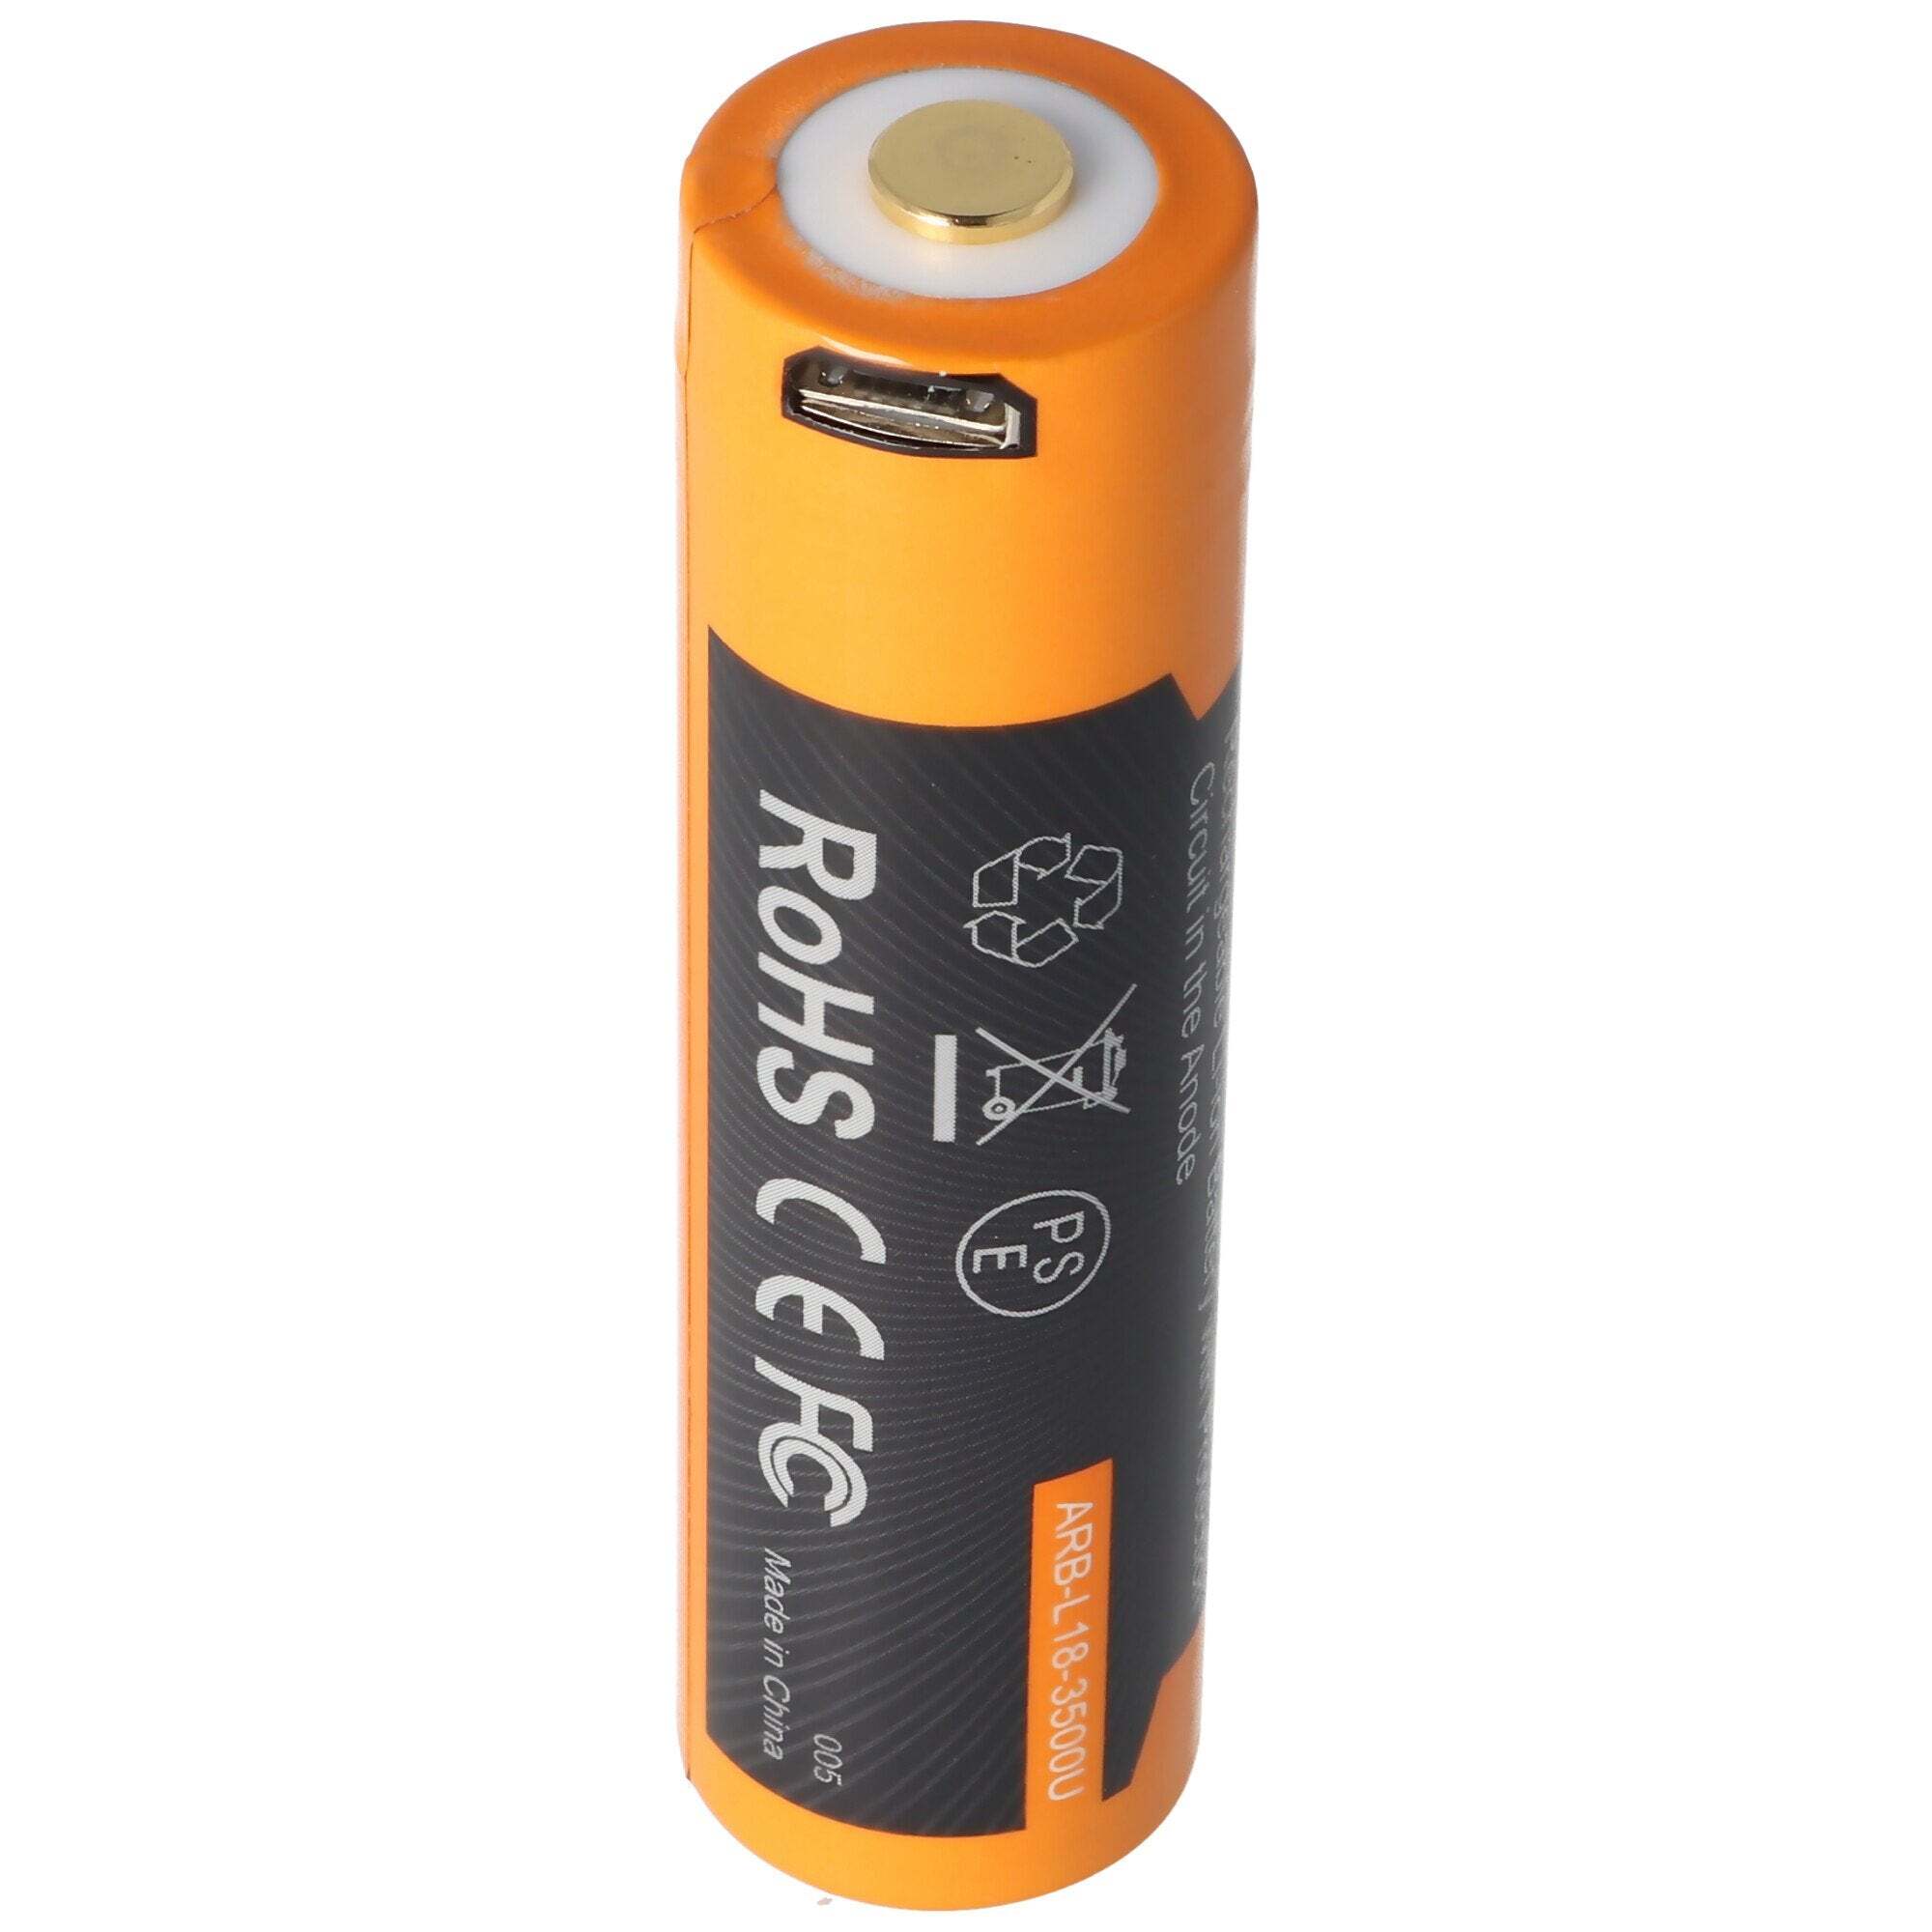 ACCUCELL Li-ionbatterij 18650, 3500 mAh beveiligd met USB-oplaadfunctie, 70x18,6 mm, met AccuSafe